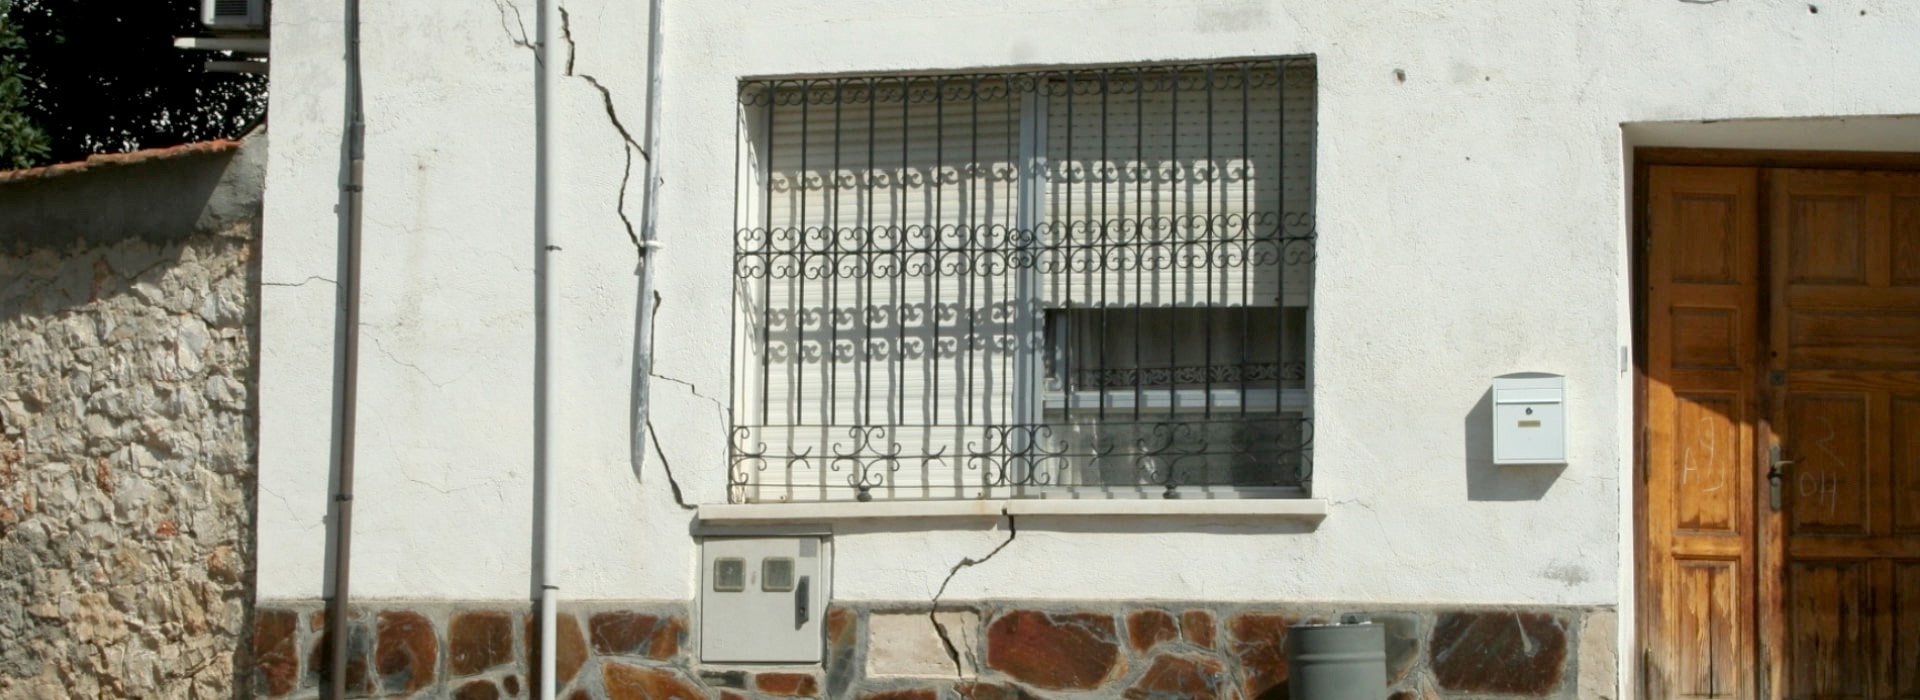 grietas en fachada